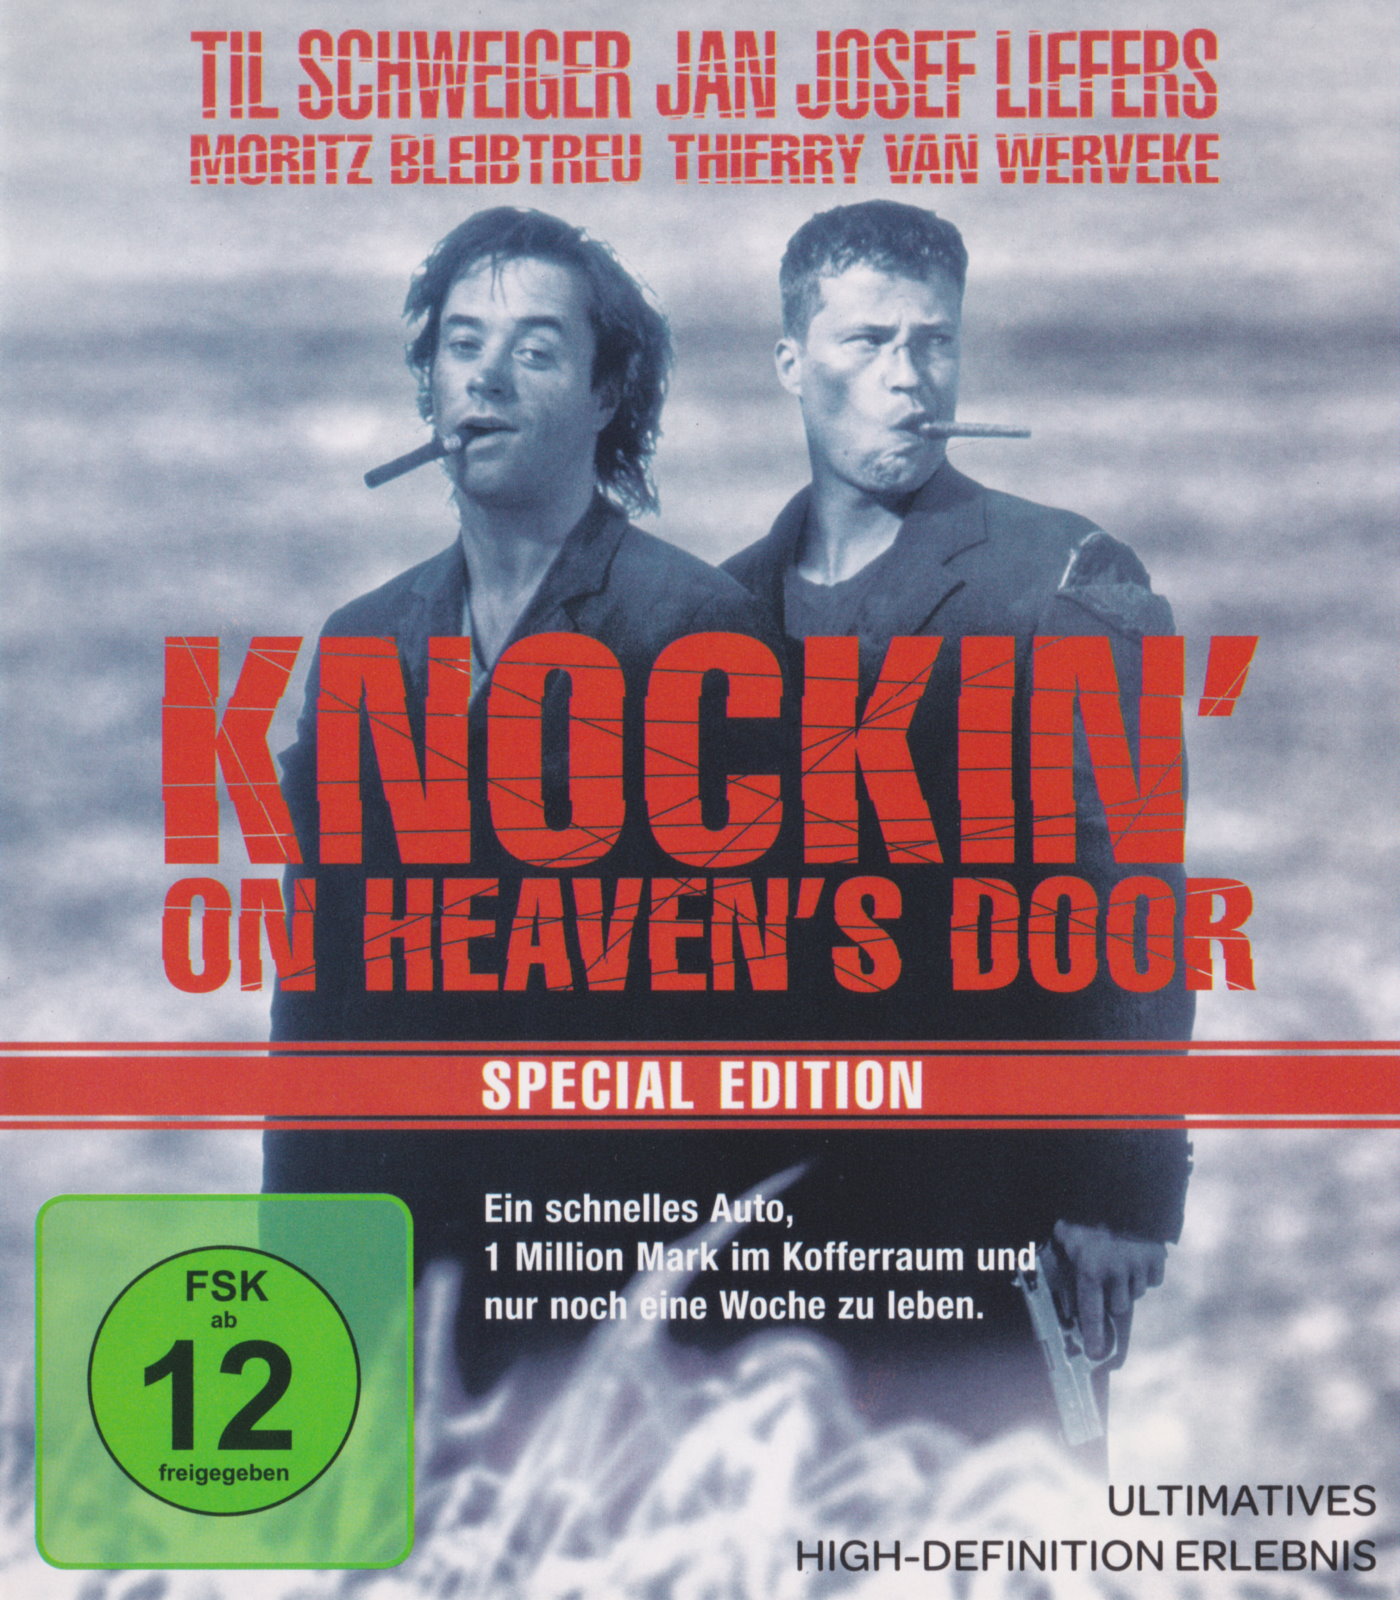 Cover - Knockin' on Heaven's Door.jpg